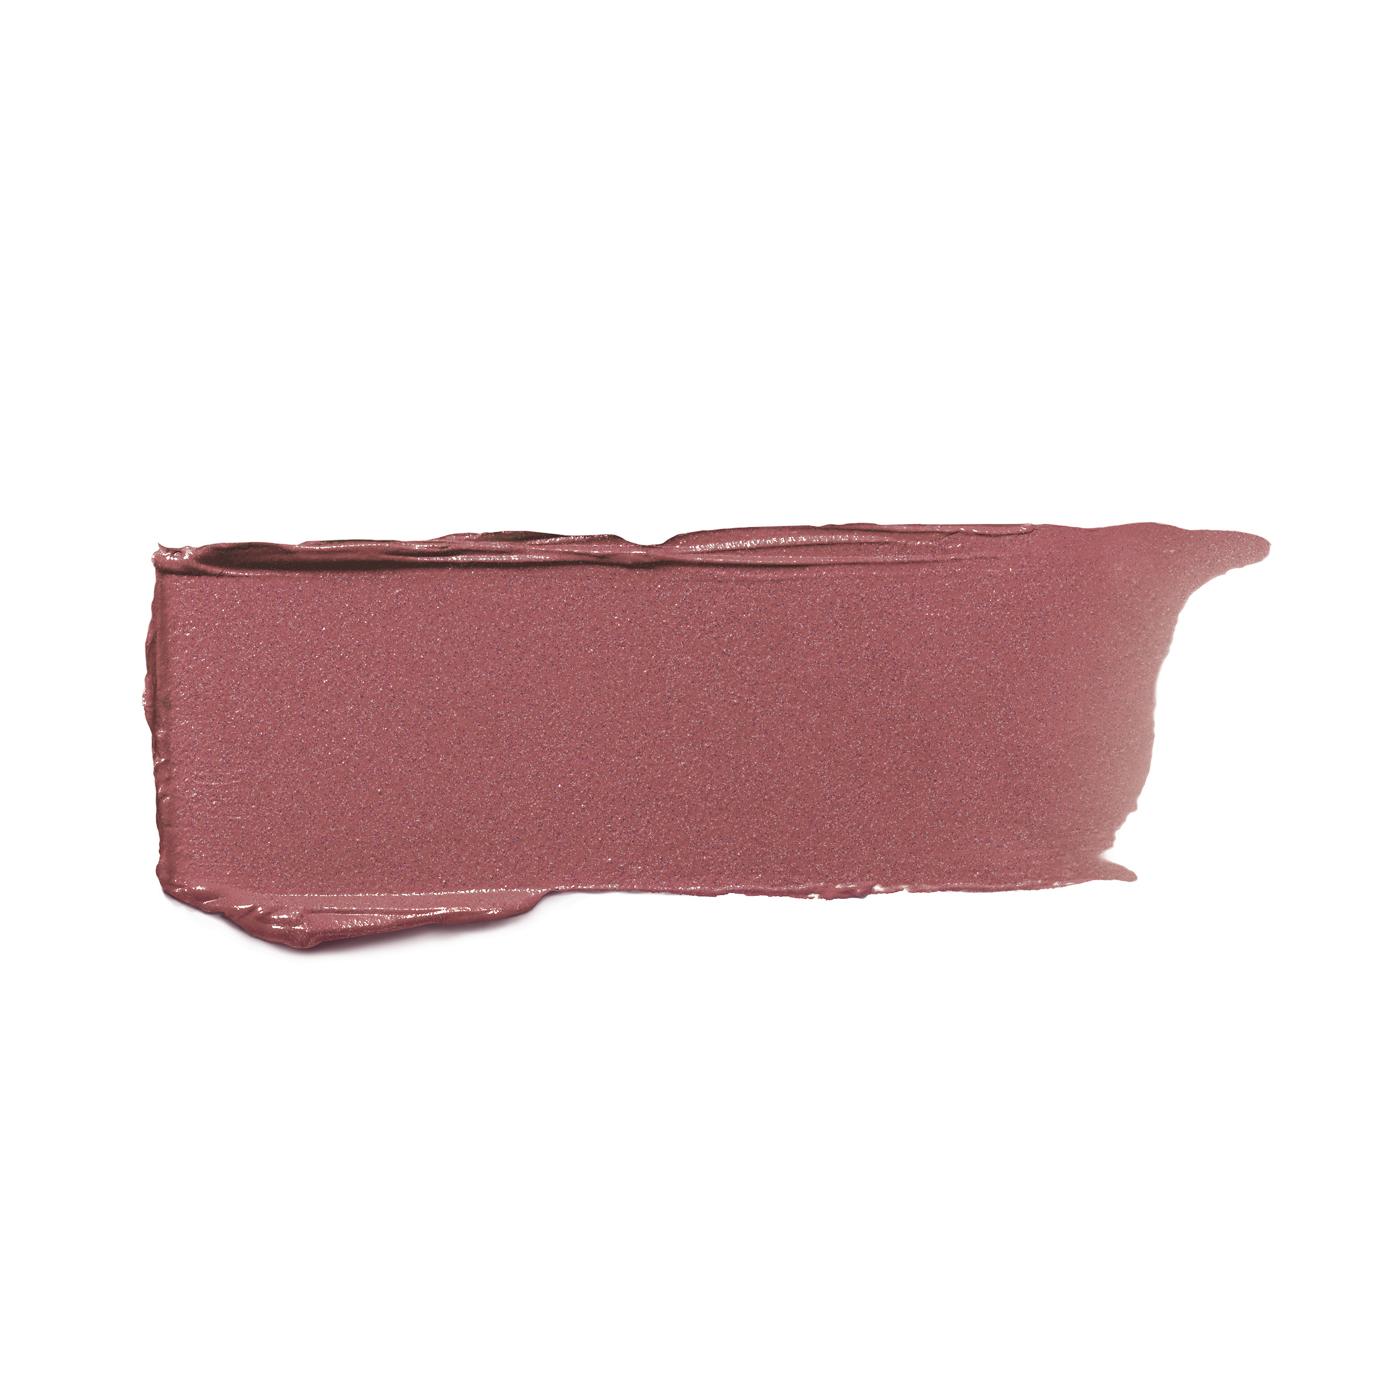 L'Oréal Paris Colour Riche Original Satin Lipstick - Mica; image 5 of 6